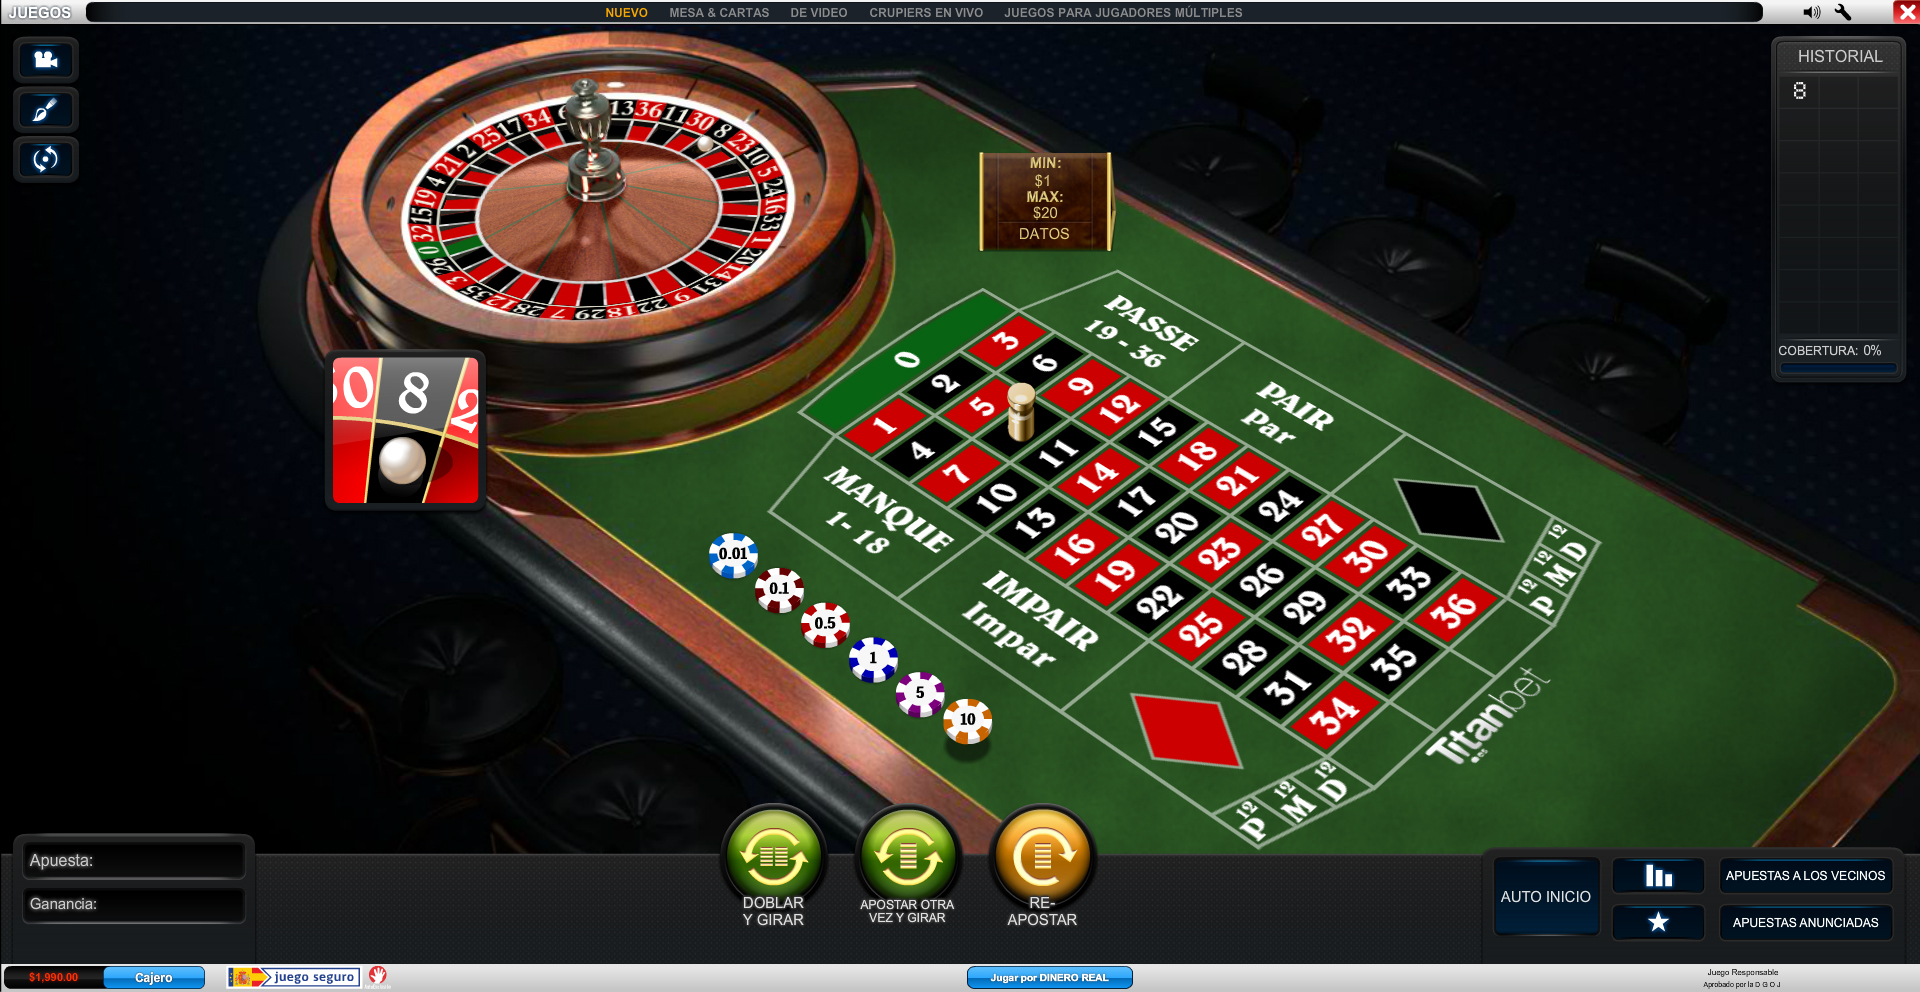 Jugar bingo por internet casino online legales en La Plata - 70019